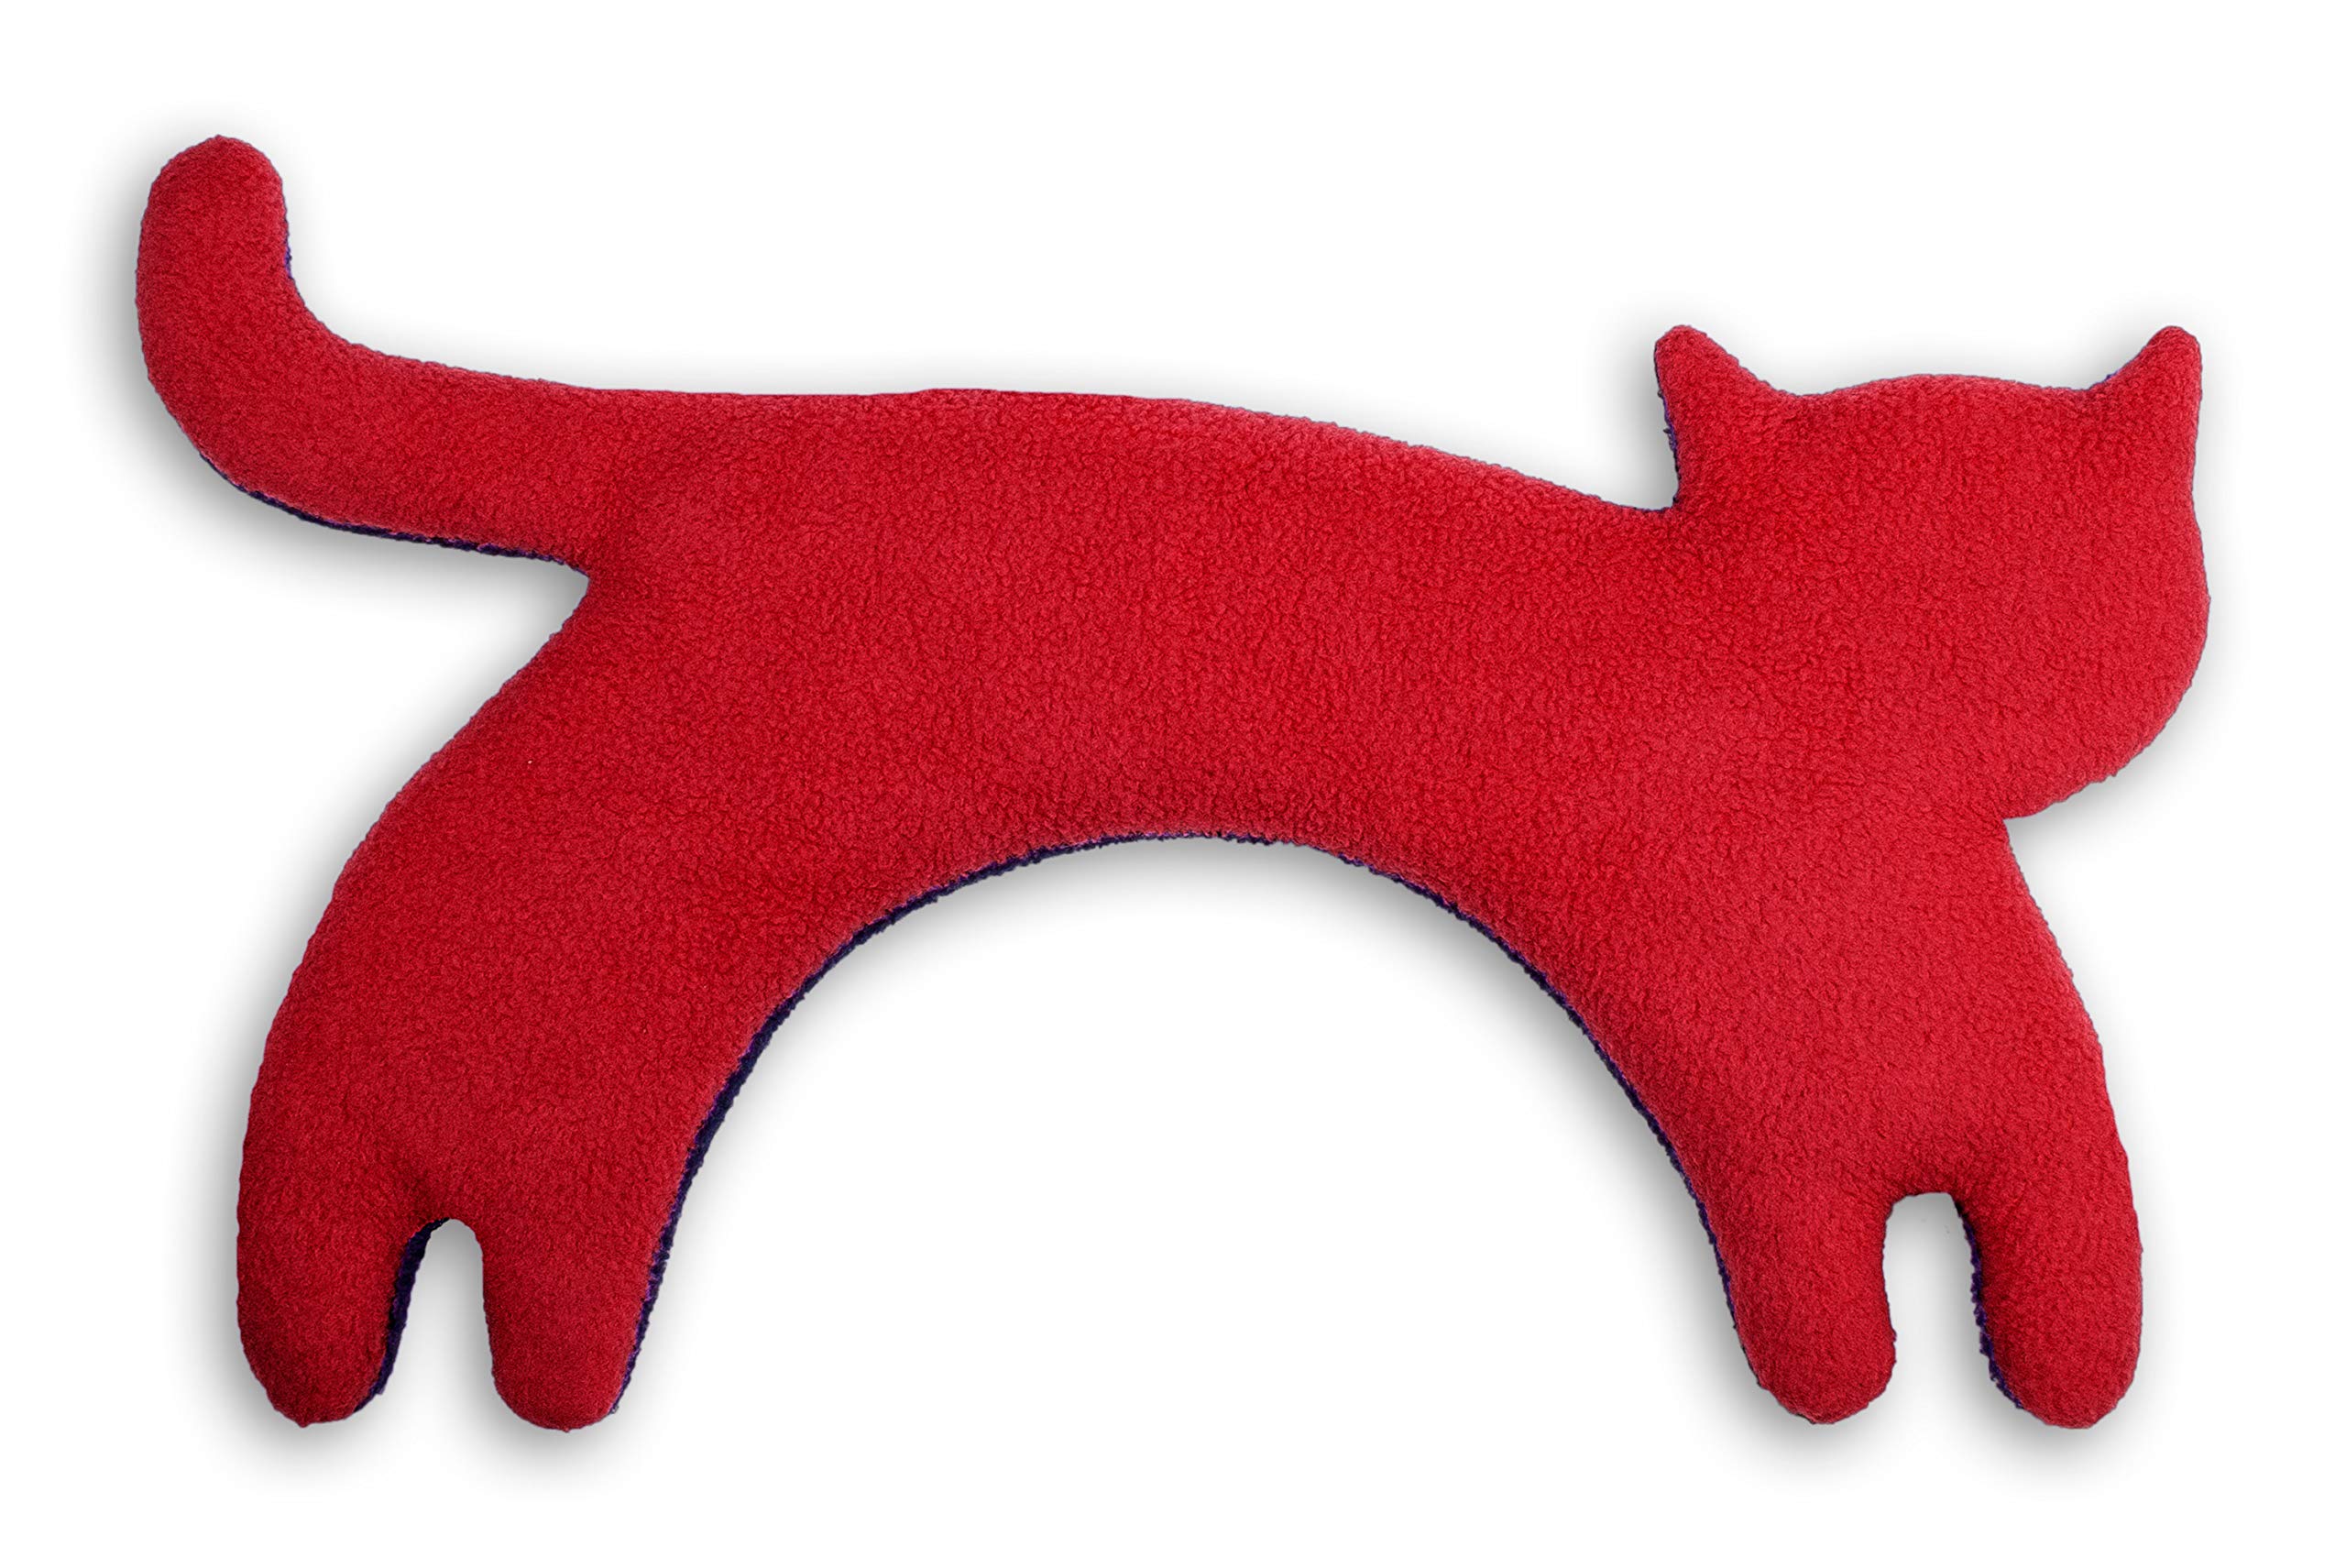 Leschi Wärmekissen - Körnerkissen für Mikrowelle - Tier Katze Rot - anschmiegsames Nackenkissen mit Bio Weizen - ideal als Wärmespender im Winter und bei Verspannungen an Nacken Schulter Hals